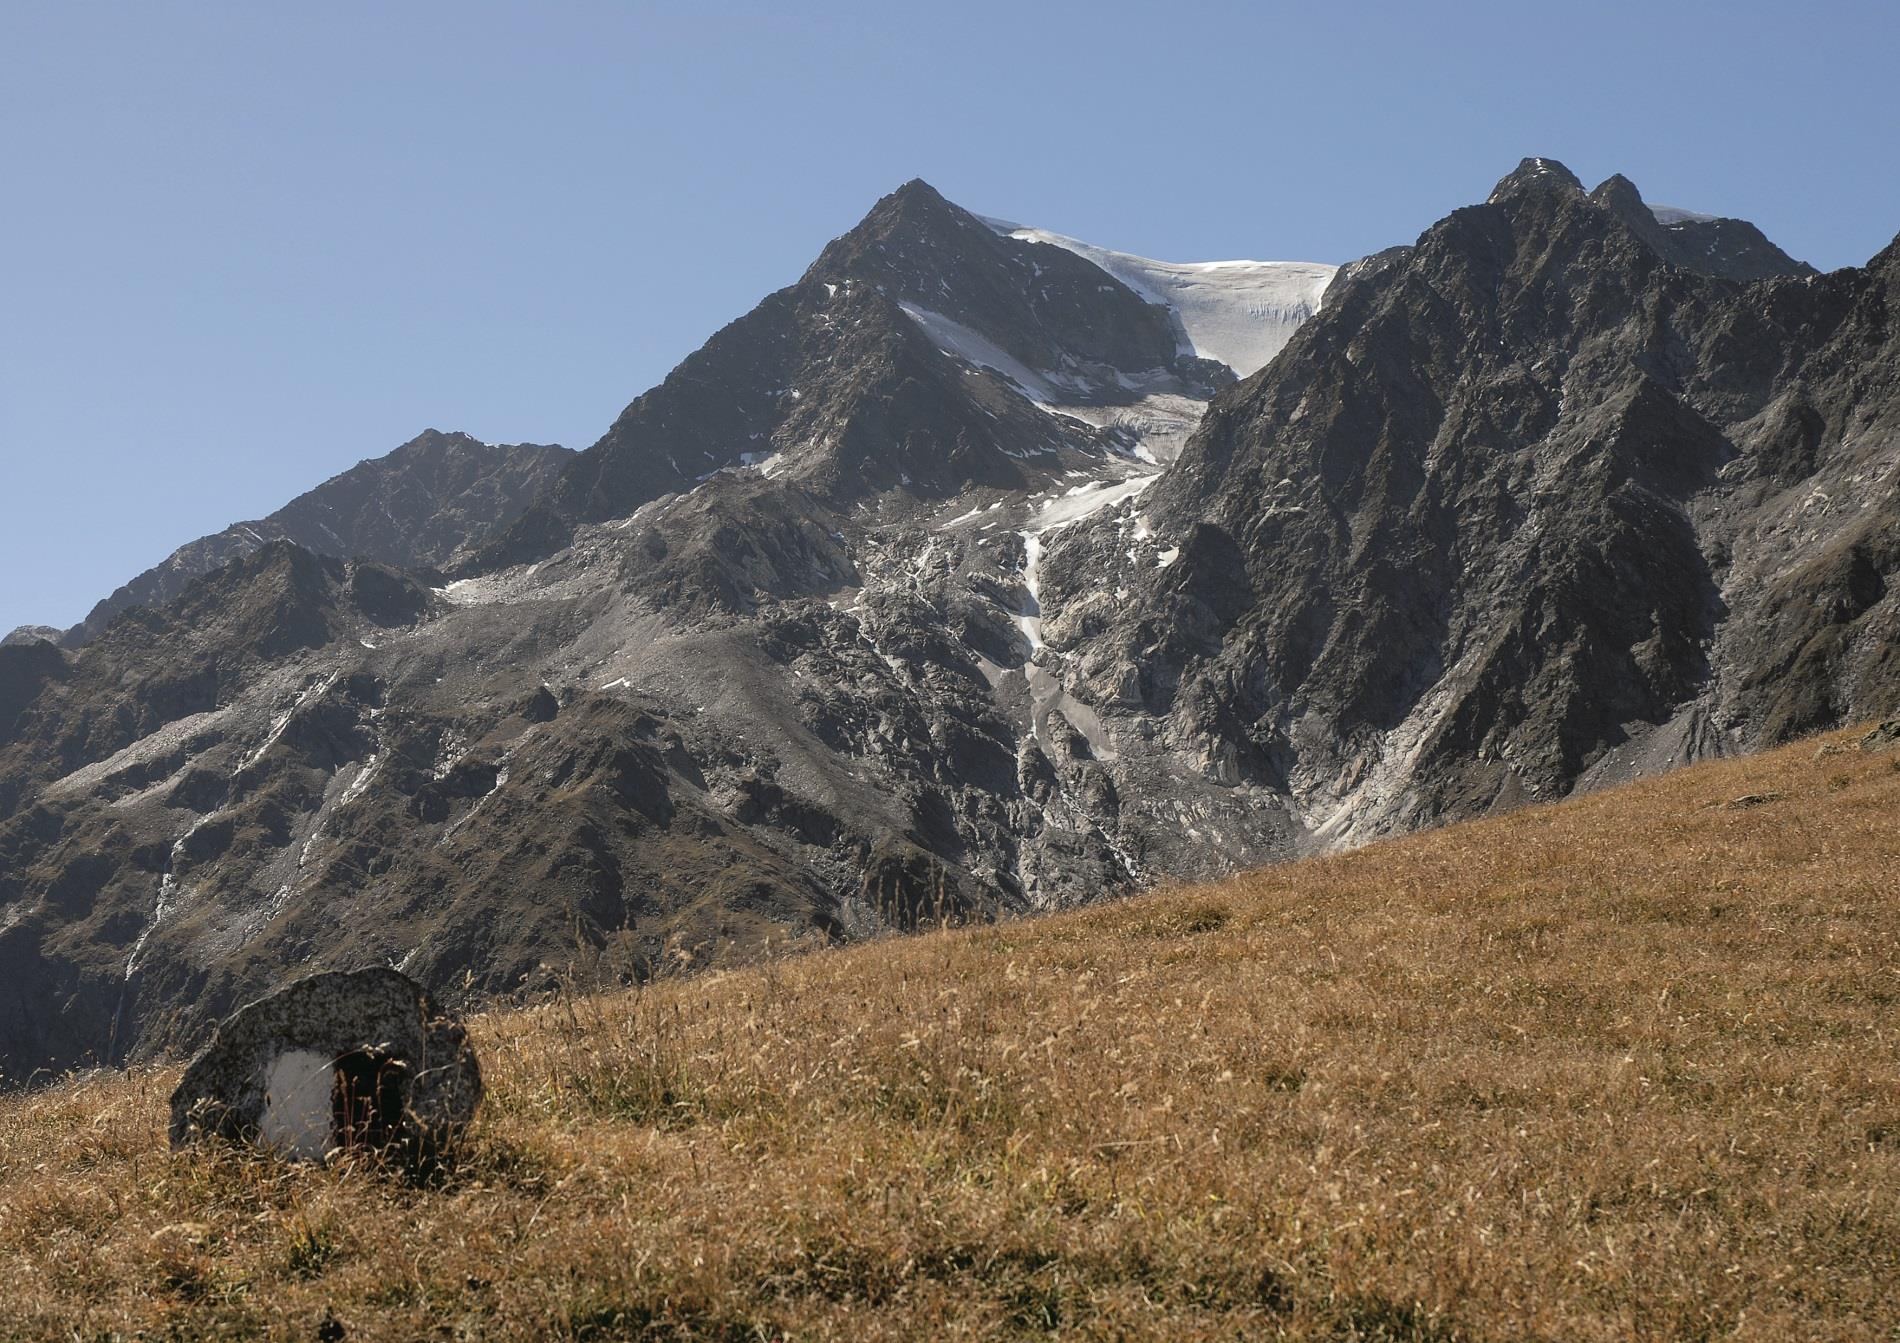 Alpine Tour to the Seelenkogel Mountain (3,475 m)